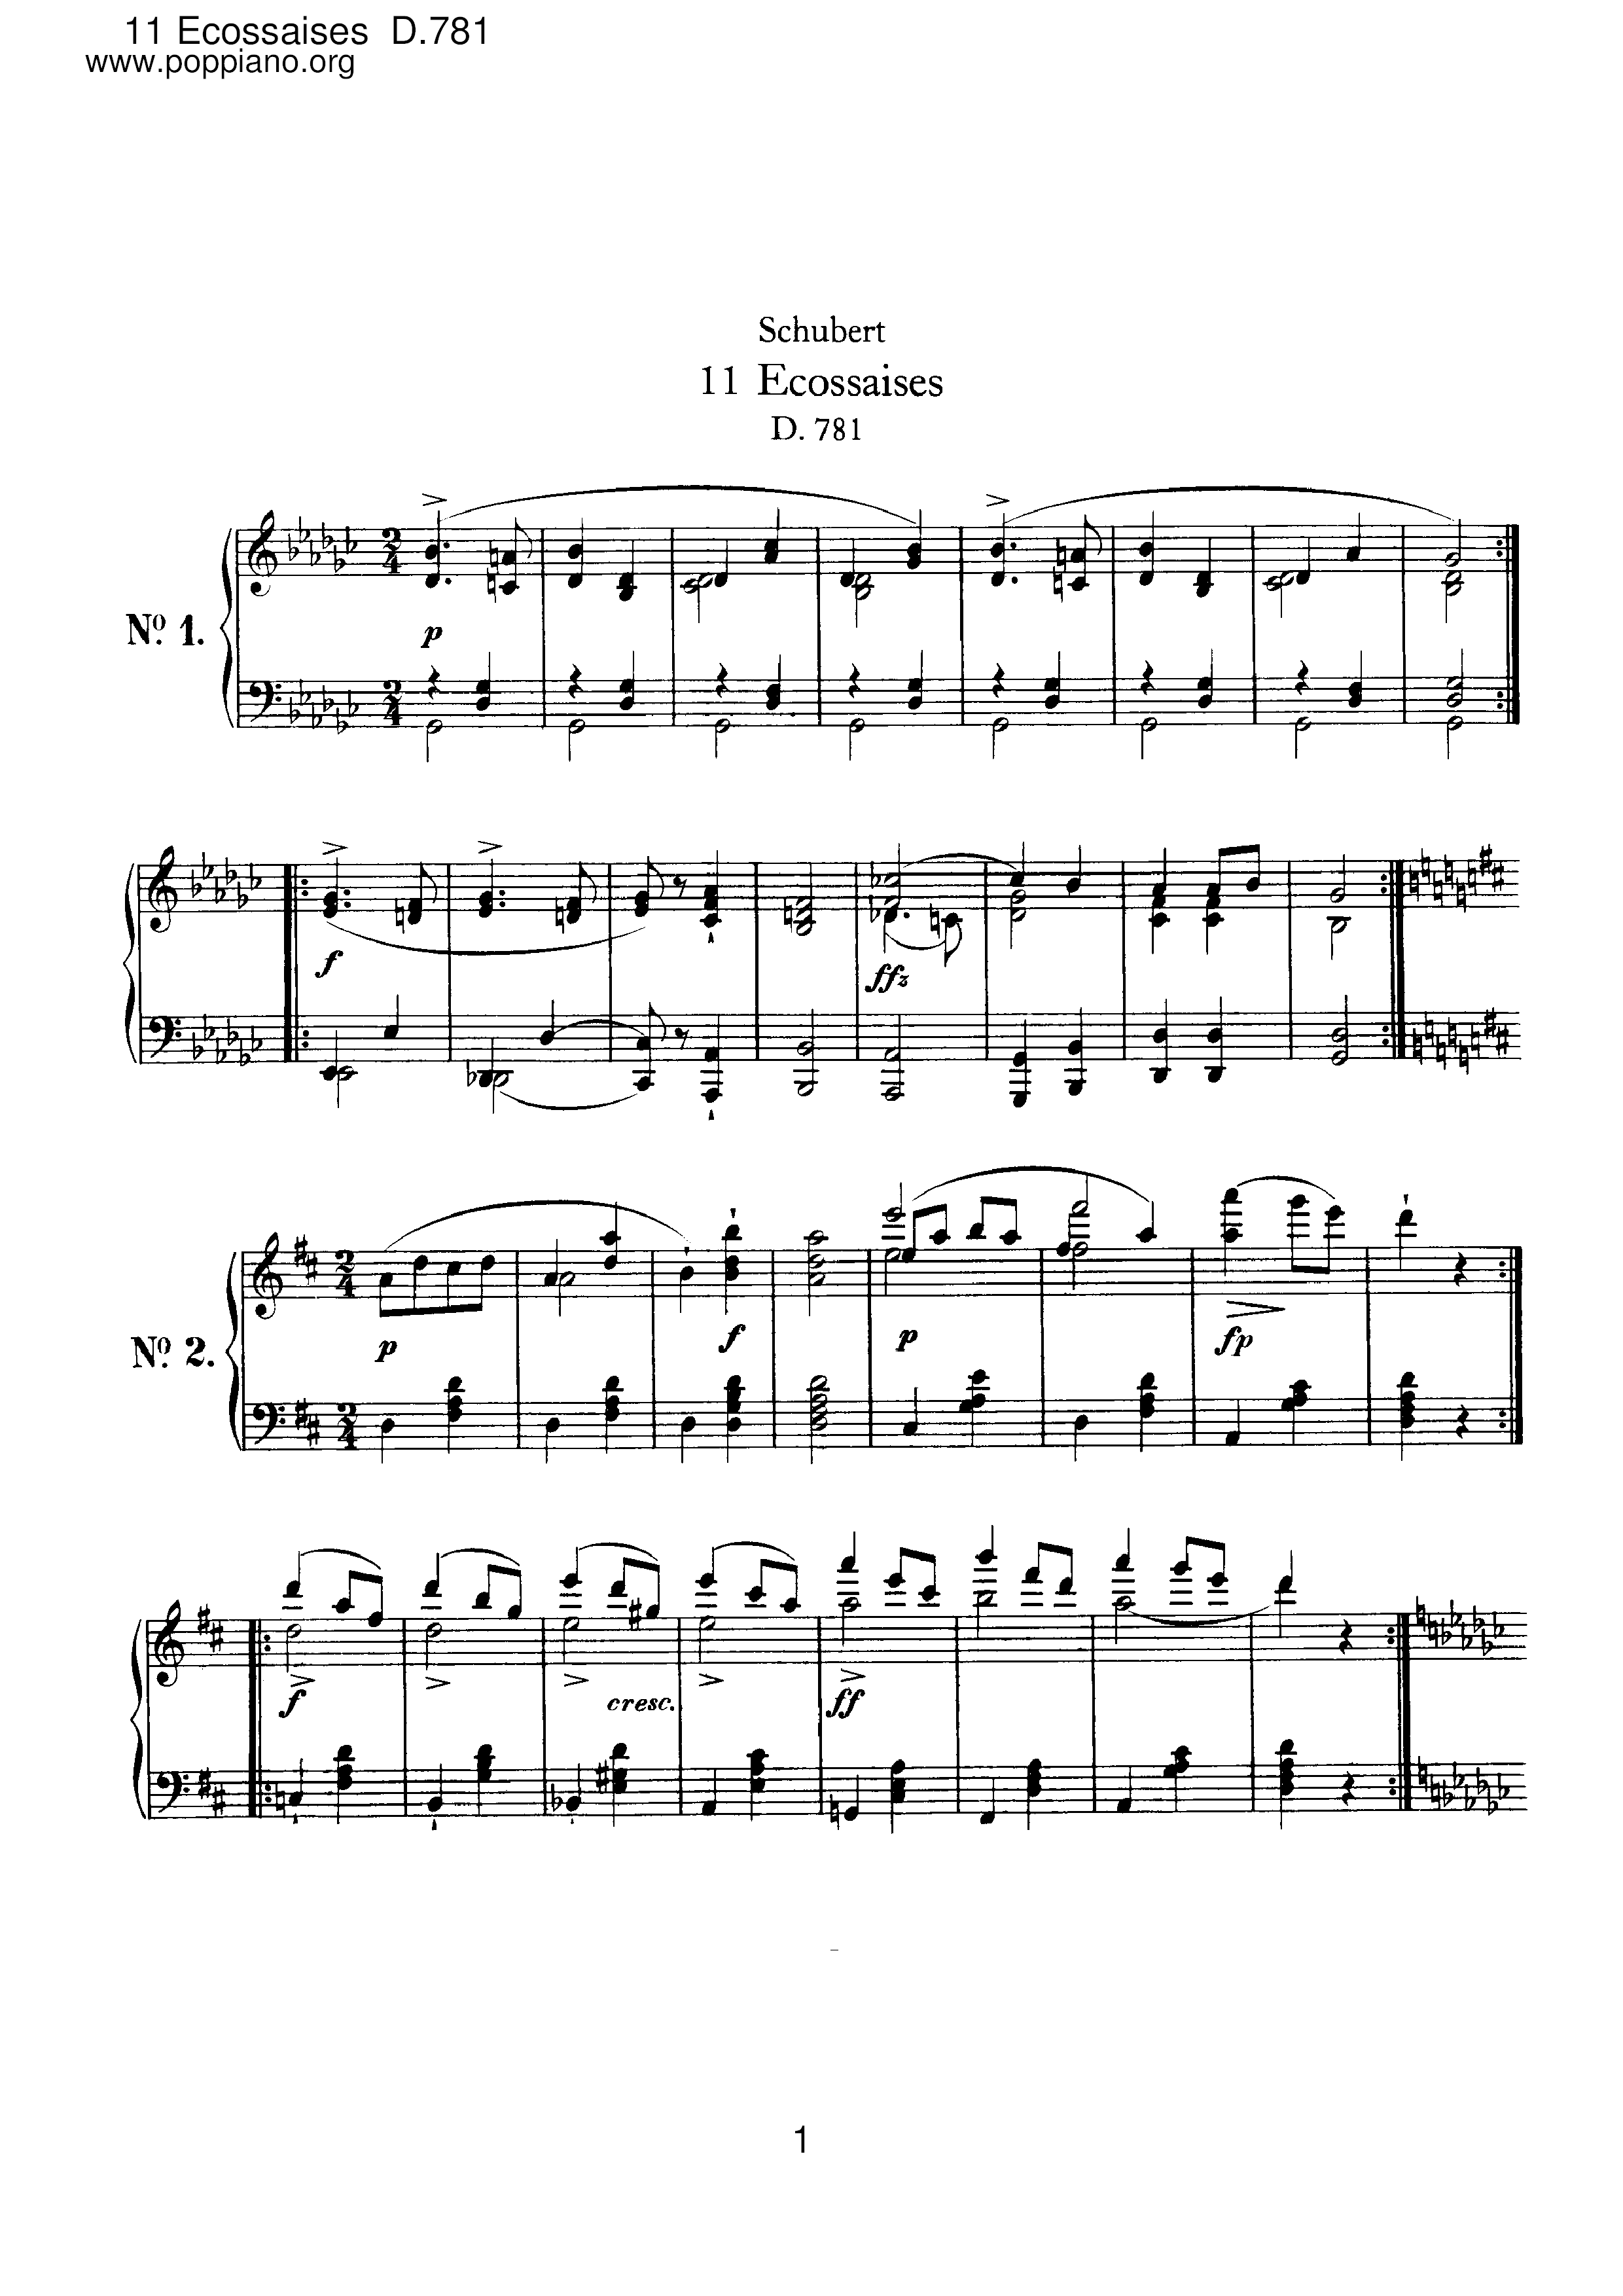 11 Ecossaises, D.781ピアノ譜